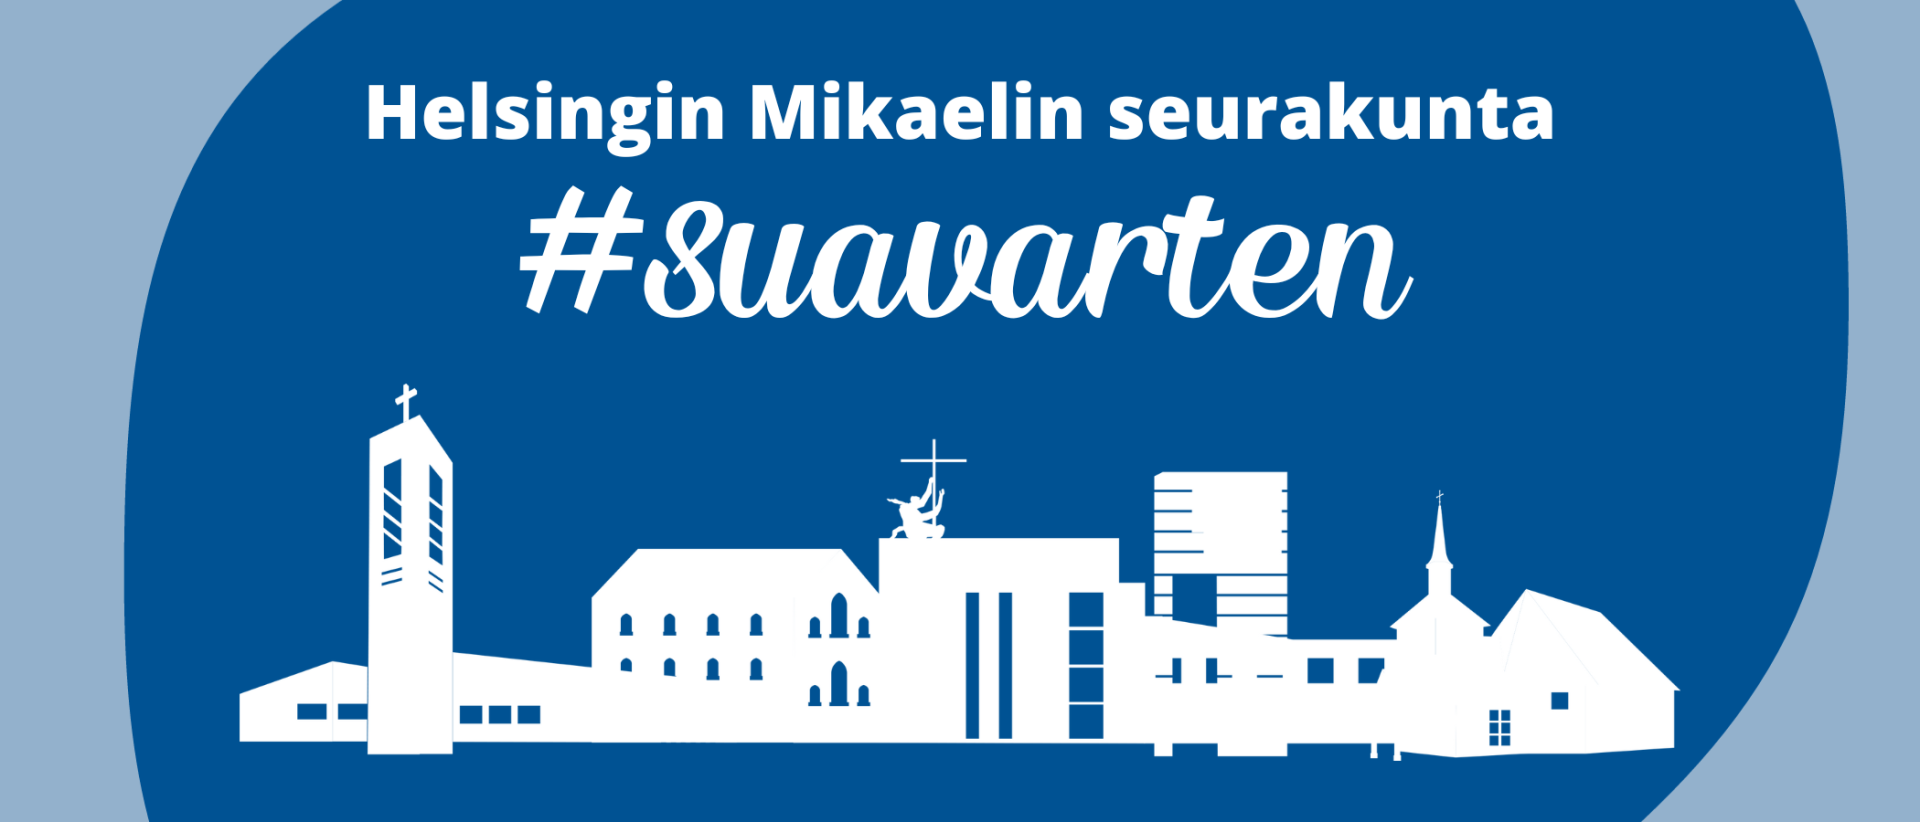 Helsingin Mikaelin seurakunnan logo ja teksti: #suavarten. Piirrettynä Mikaelin seurakunnan 4 kirkkoa.